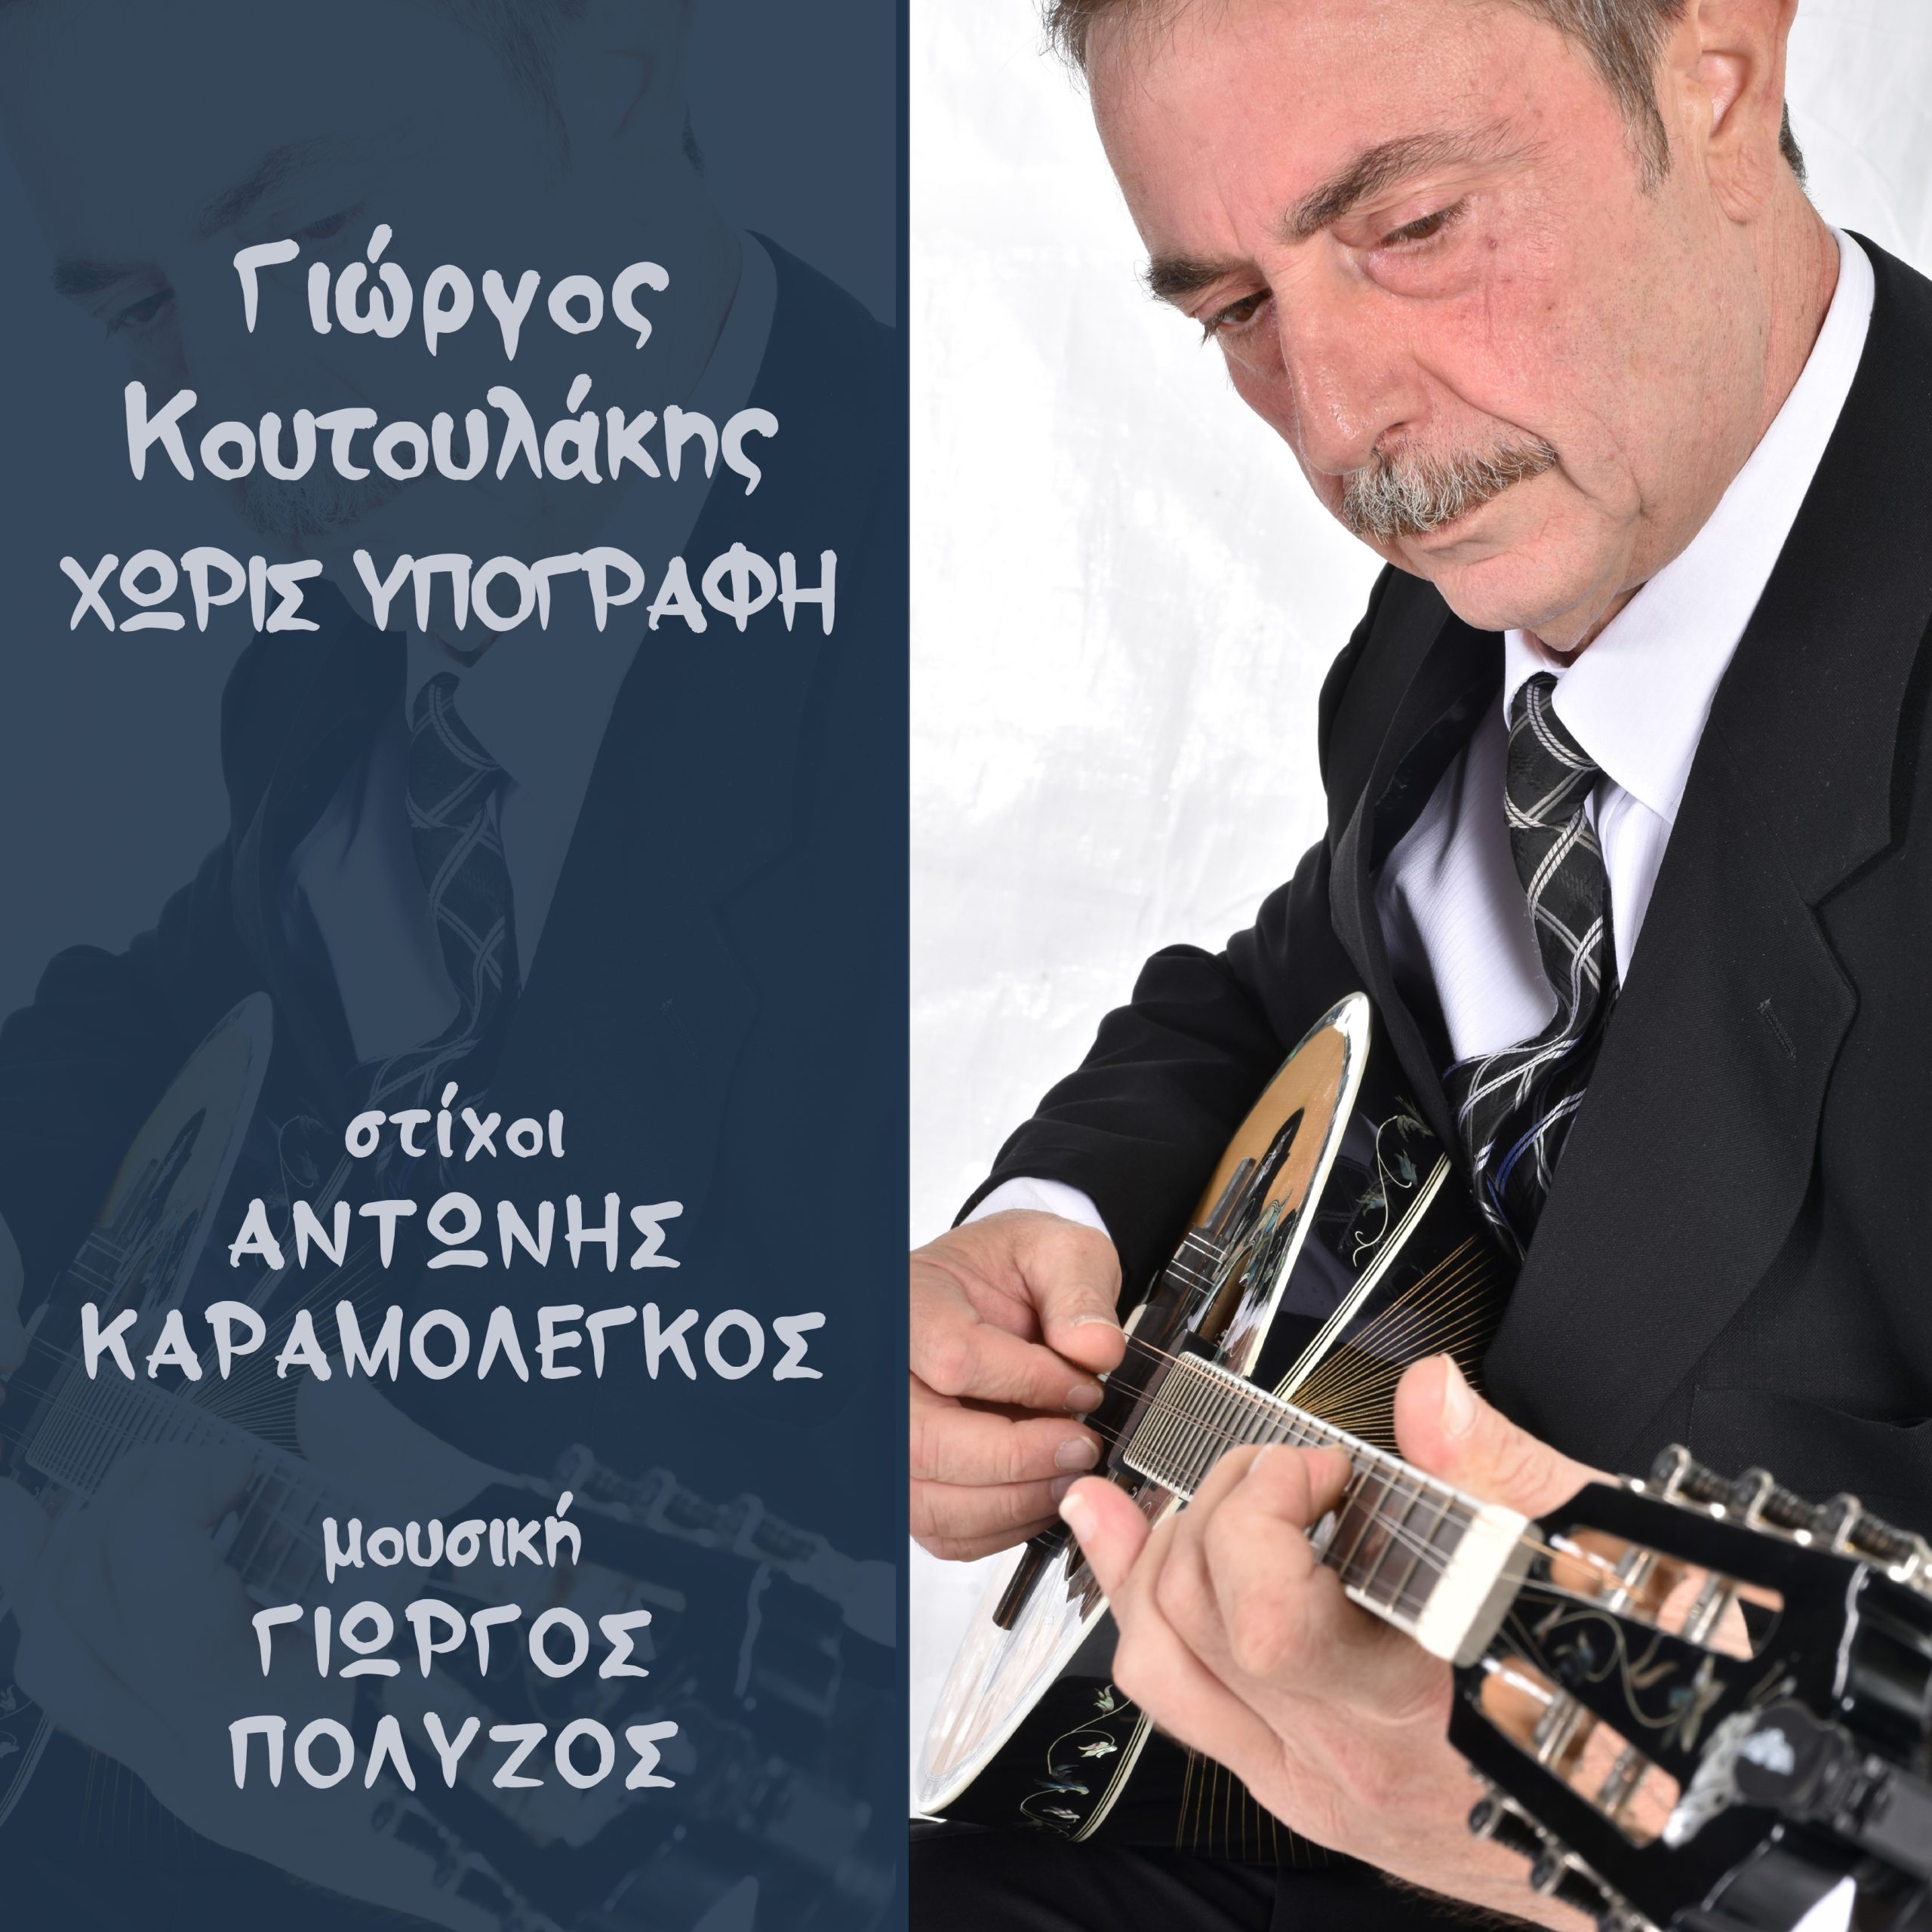 Γιώργος Κουτουλάκης, Χωρίς υπογραφή (ψηφιακό EP 6 τραγουδιών)